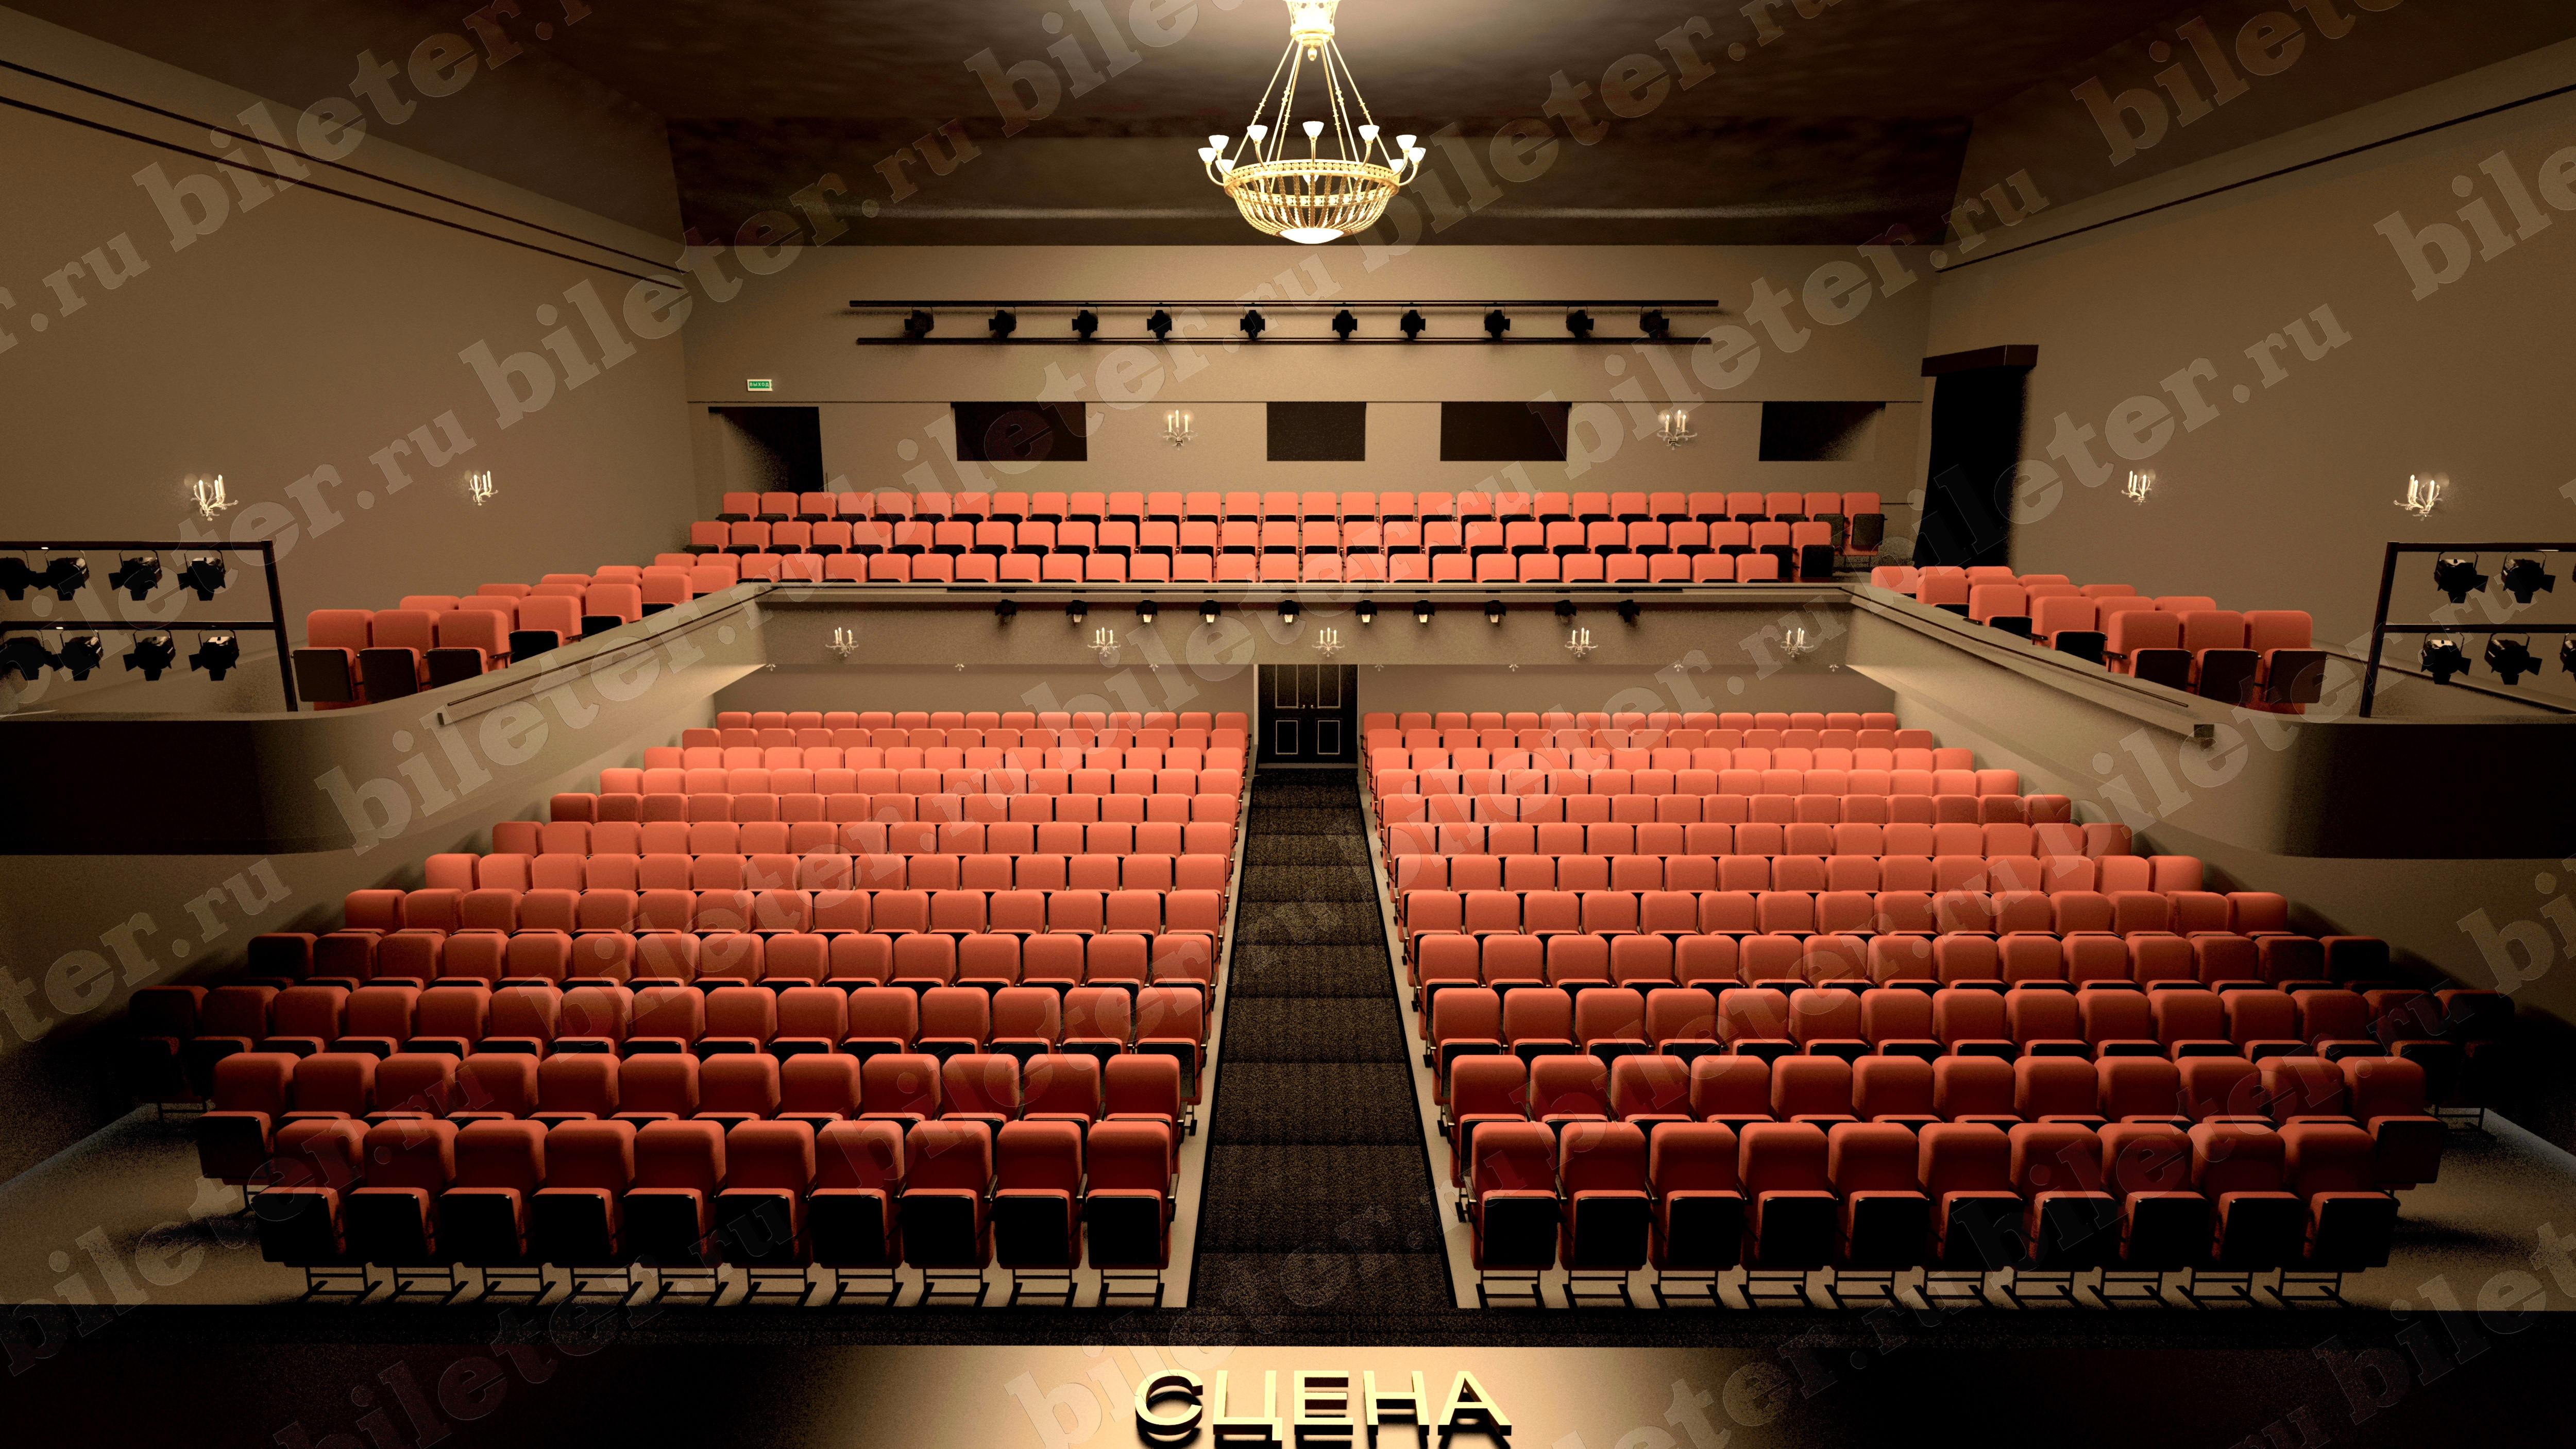 театр на литейном фото зала